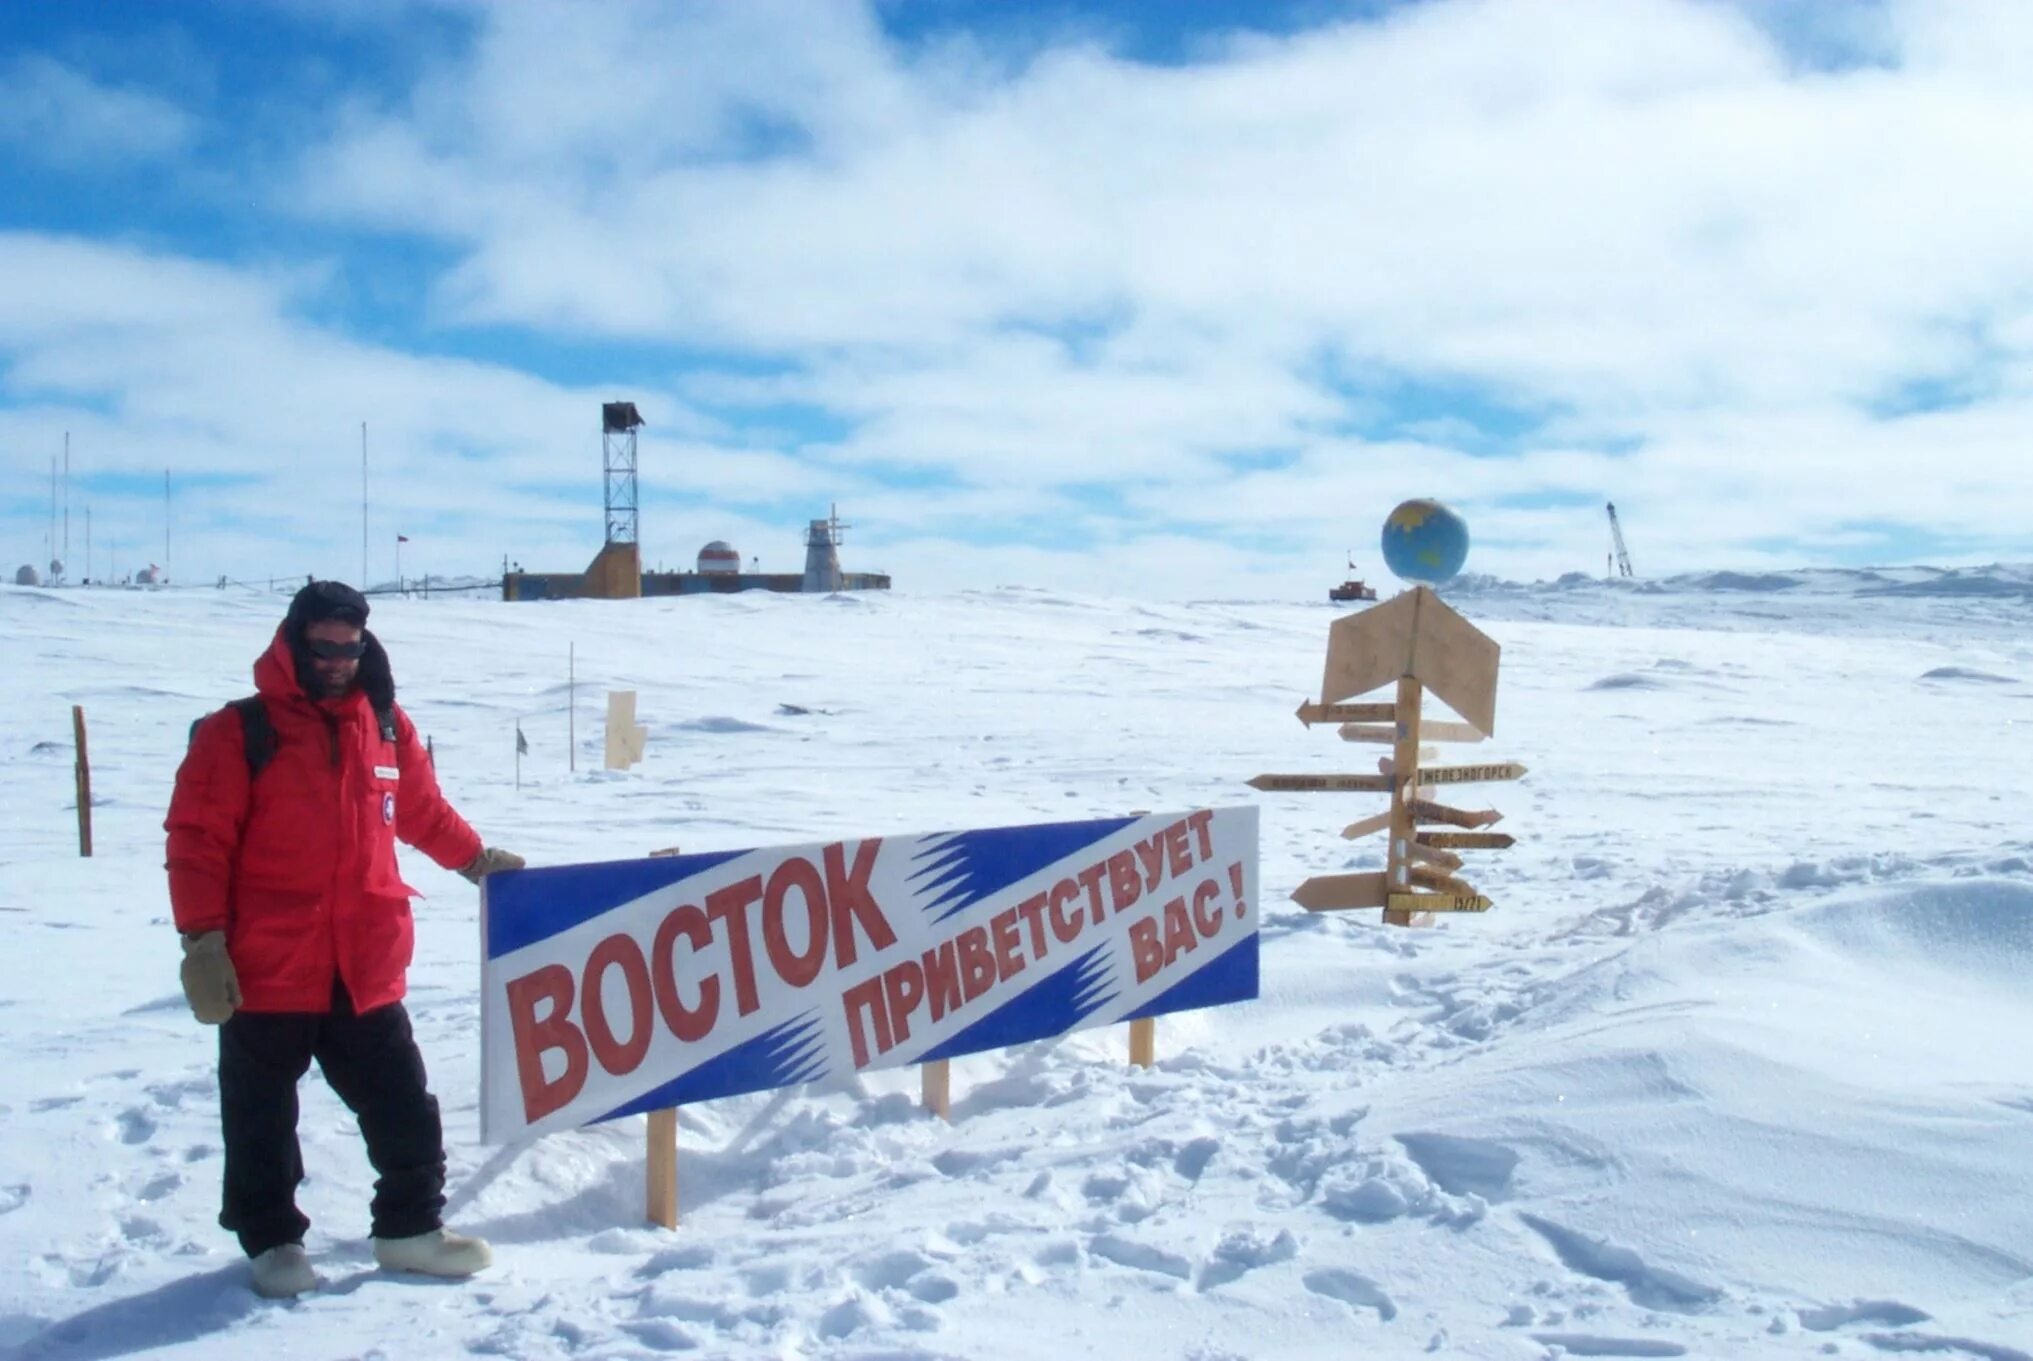 Самая низкая температура воздуха в антарктиде. Научная станция Восток в Антарктиде. Полярная станция Восток в Антарктиде. Восток 2 Полярная станция. Полюс холода станция Восток Антарктида.